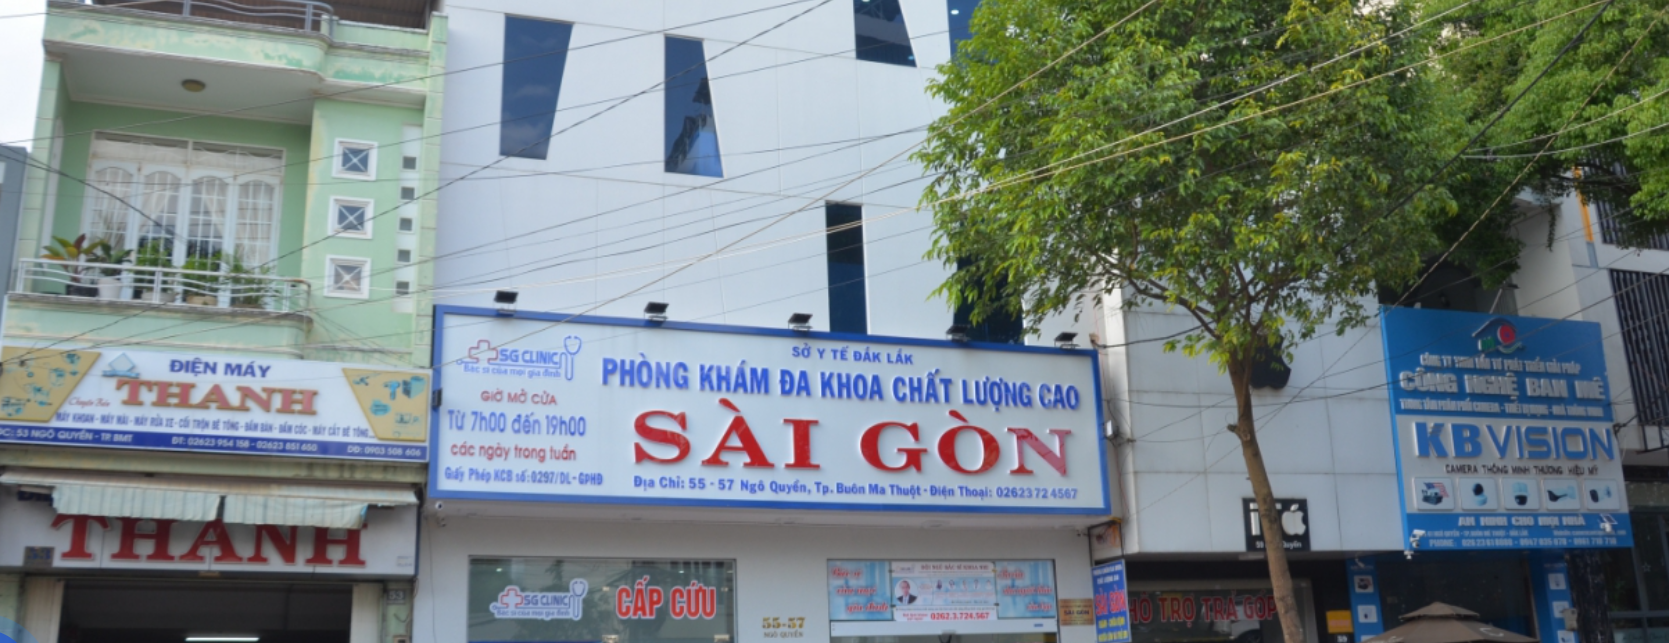 Banner Phòng Khám Đa Khoa Chất Lượng Cao Sài Gòn